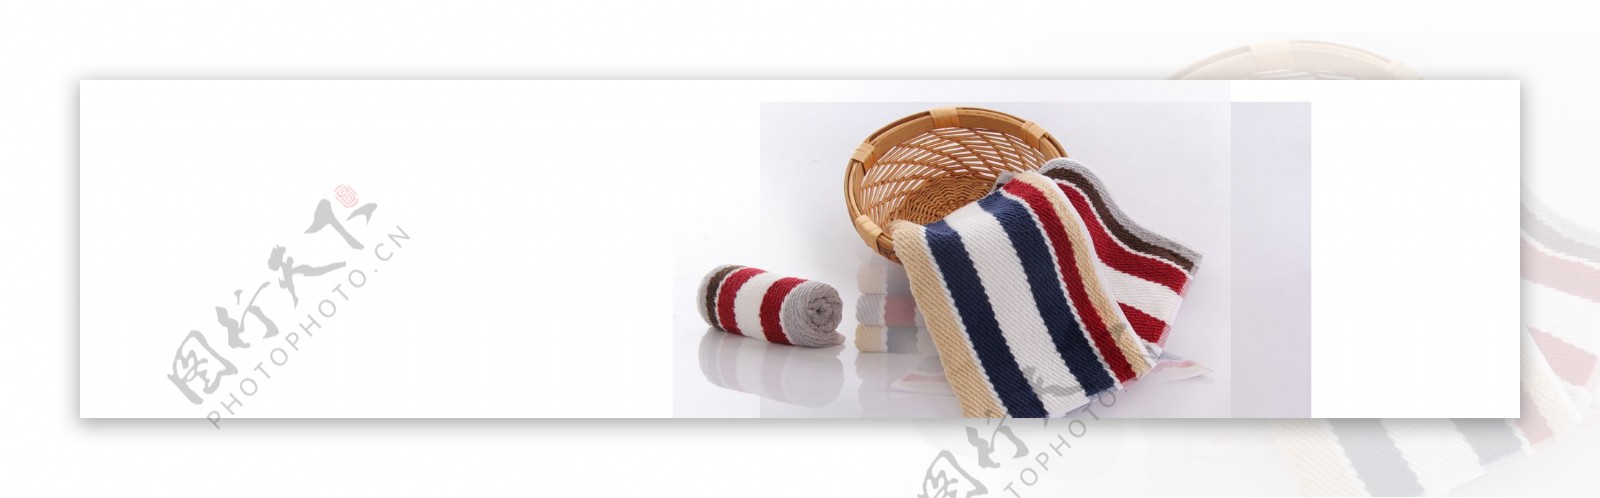 竹篮条纹毛巾元素